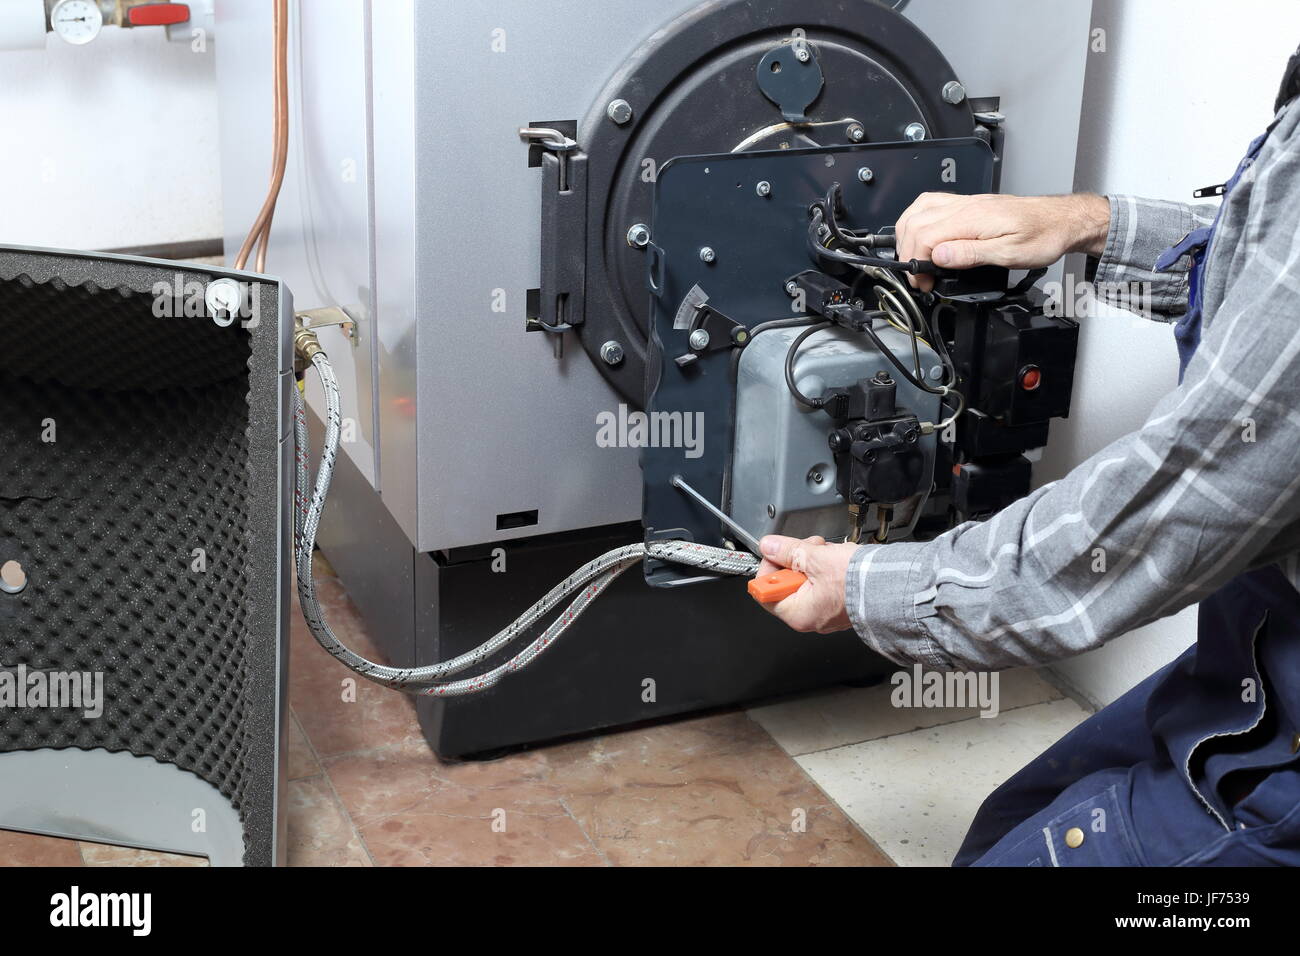 Reparatur der Heizung Brenner Stockfotografie - Alamy